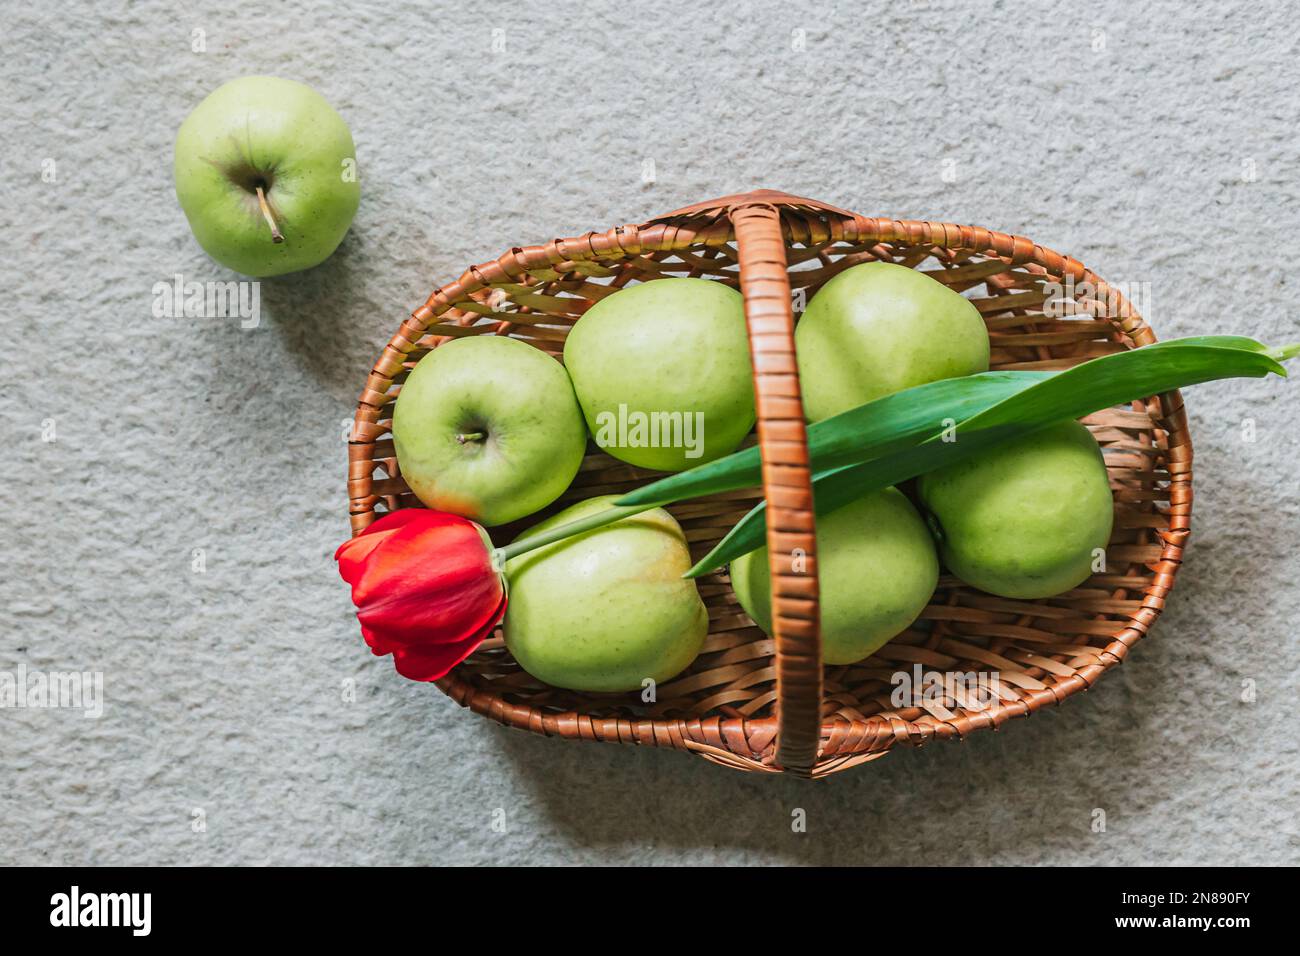 Frische, grüne Äpfel im Korb und eine rote Tulpe. Draufsicht, Frühjahrssymbolik. Speicherplatz kopieren Stockfoto